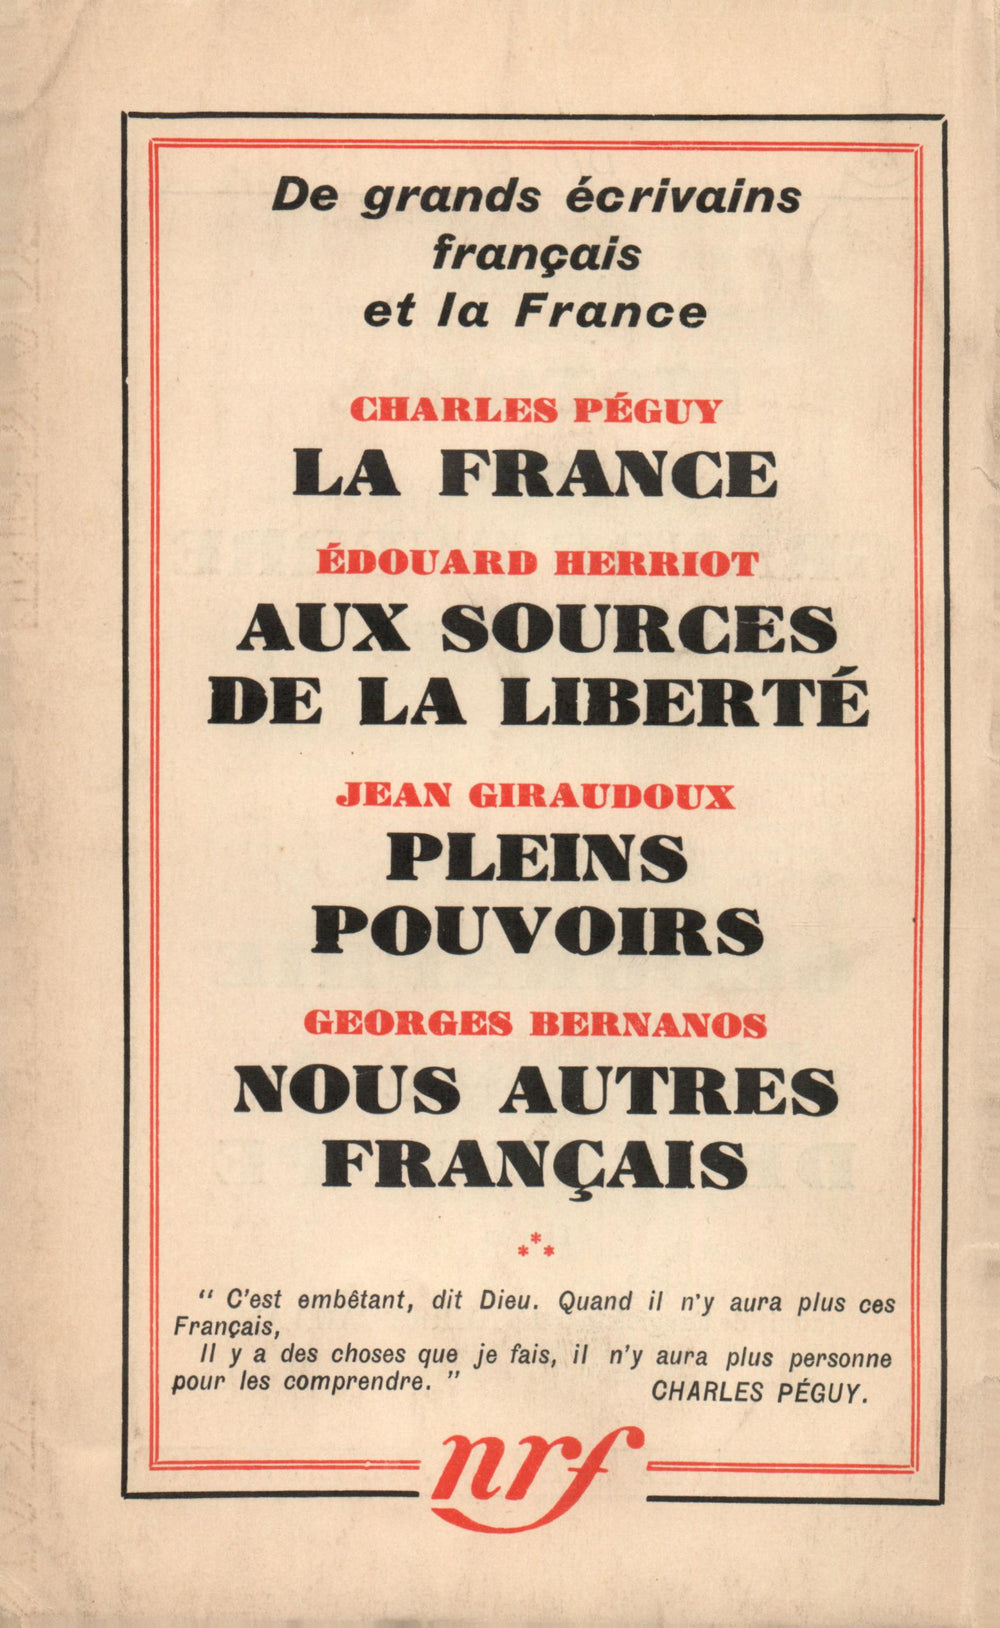 La Nouvelle Revue Française N' 313 (Octobre 1939)